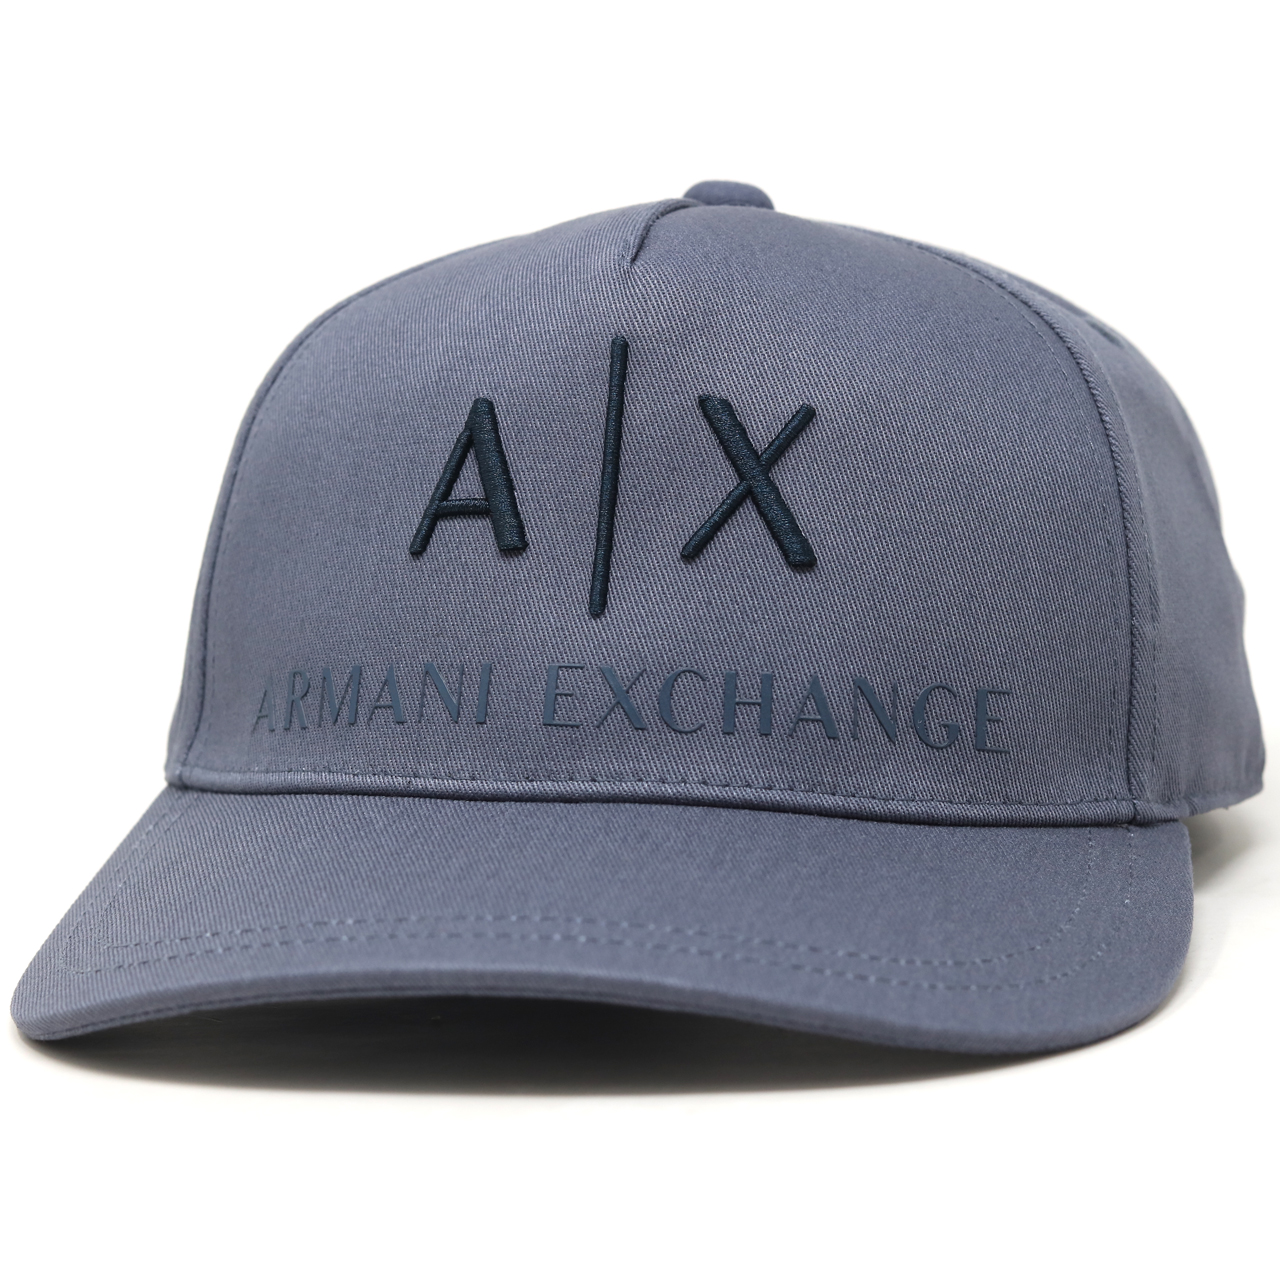 キャップ 牛革 アルマーニエクスチェンジ 紳士キャップ メンズ cap スポーツ A|X Armani Exchange キャップ メンズ 帽子  メンズ ゴルフ 正規輸入品 ブランド